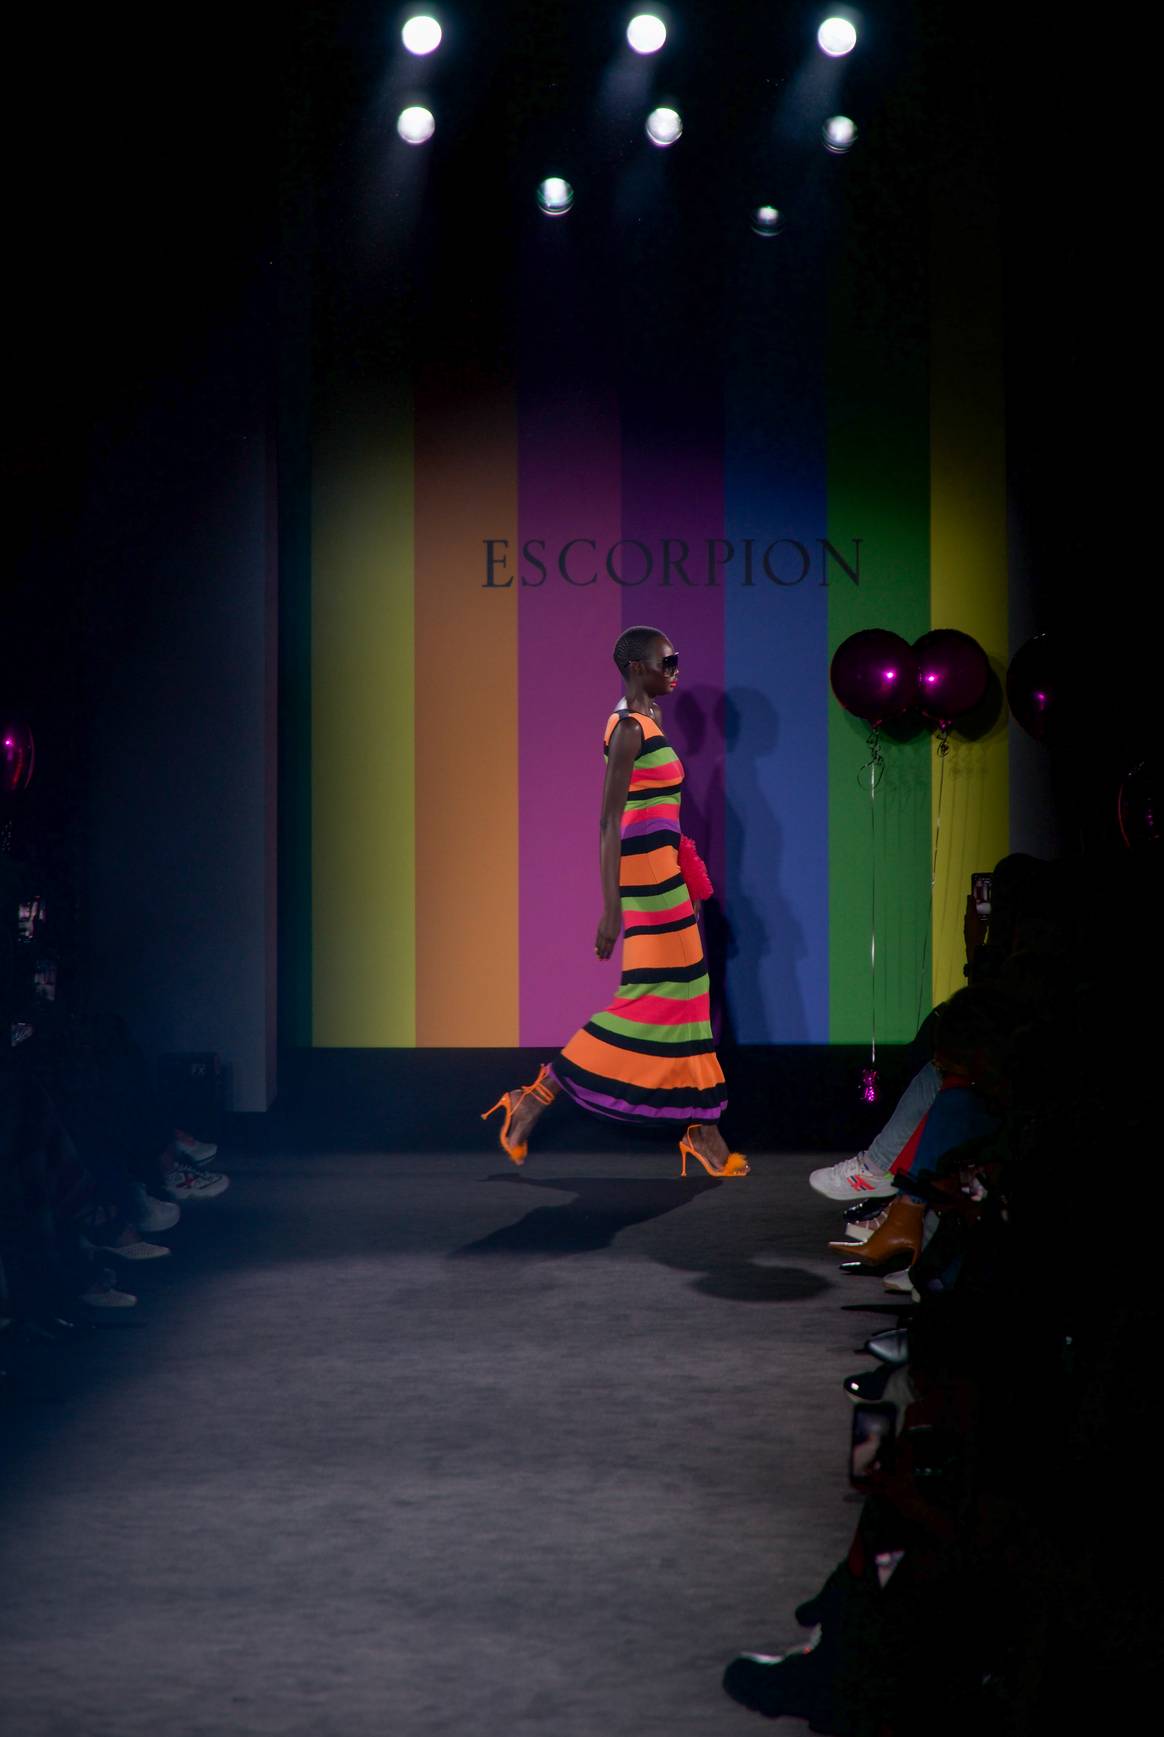 Imagen de Escorpion SS23 en 080 Barcelona Fashion Week, por cortesía de Kike Illanes